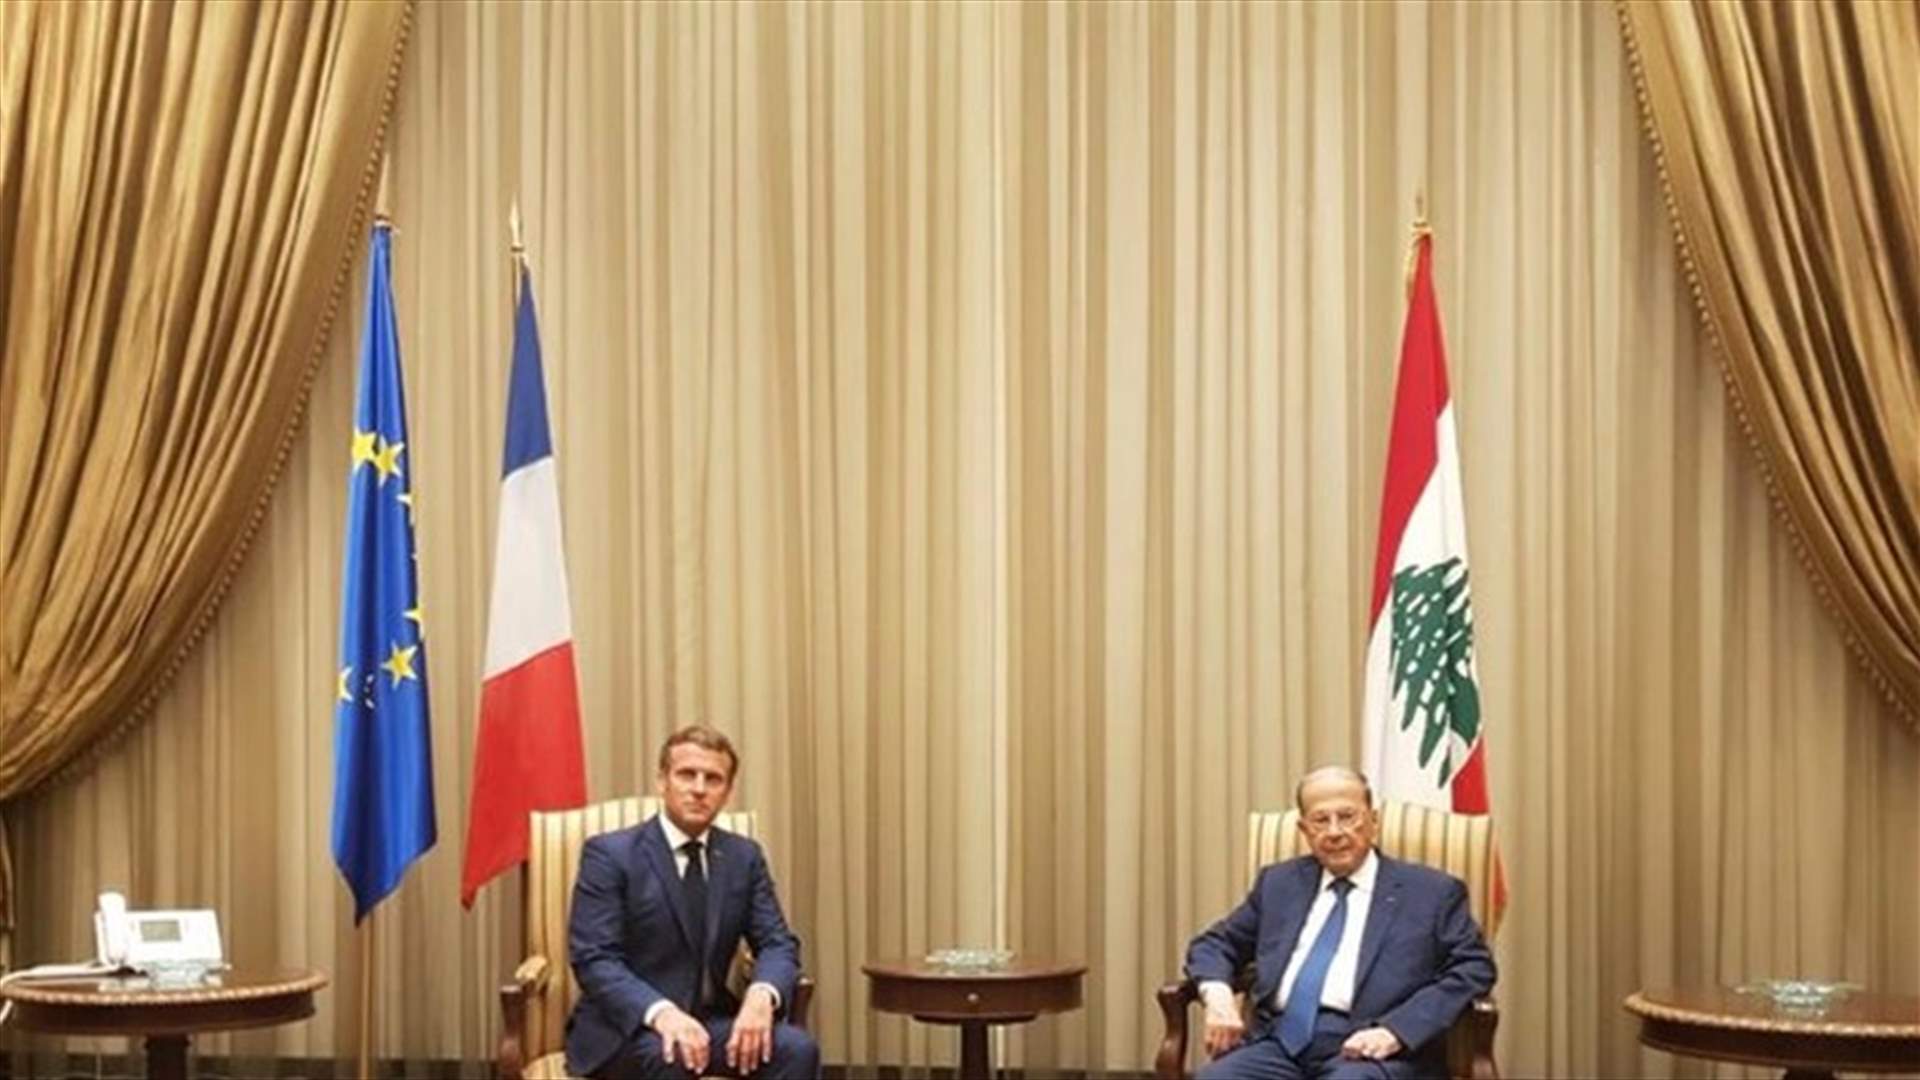 بيان مشترك عن القمة اللبنانية الفرنسية في قصر بعبدا : التزام بمتابعة مسيرة الاصلاحات للنهوض بلبنان